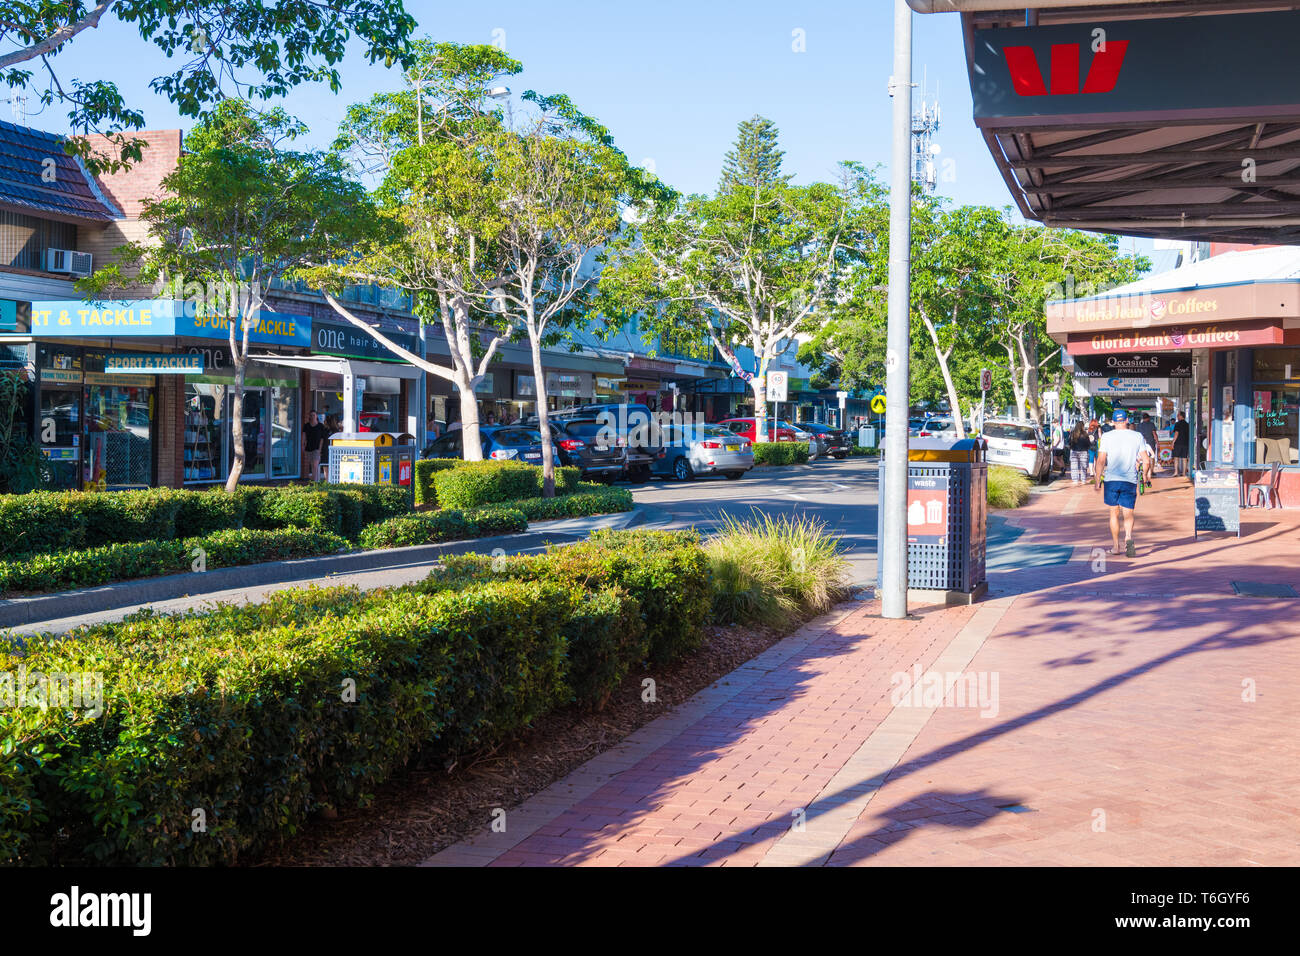 Forster, NSW, Australia-April 20, 2019: persone godendo il sole nella città di Forster, una città costiera nella regione dei Grandi Laghi di nuovo Sout Foto Stock